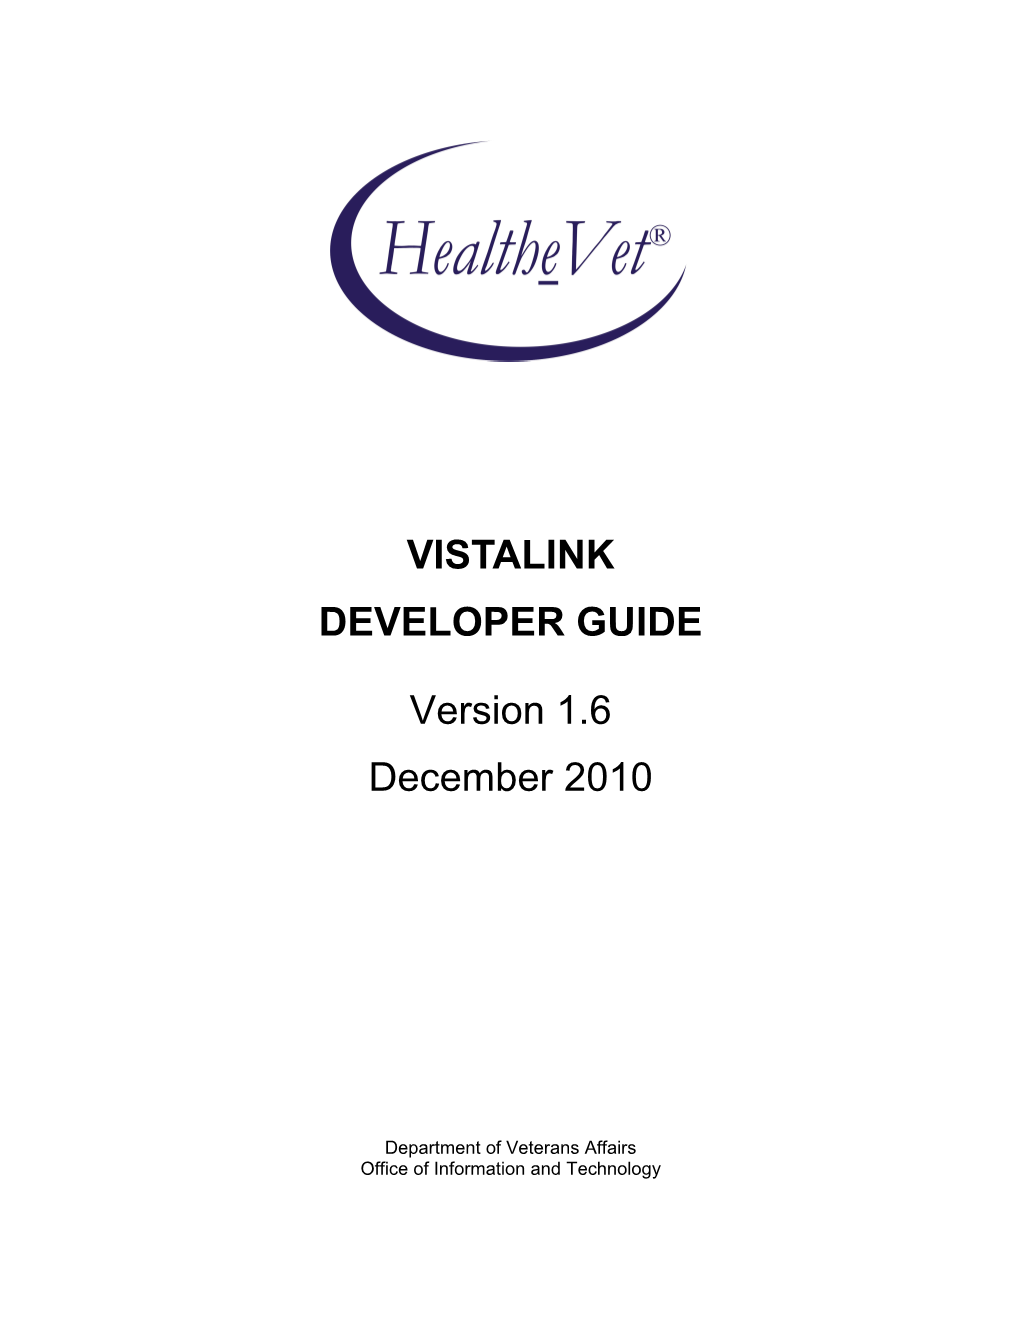 Vistalink V. 1.6 Developer Guide